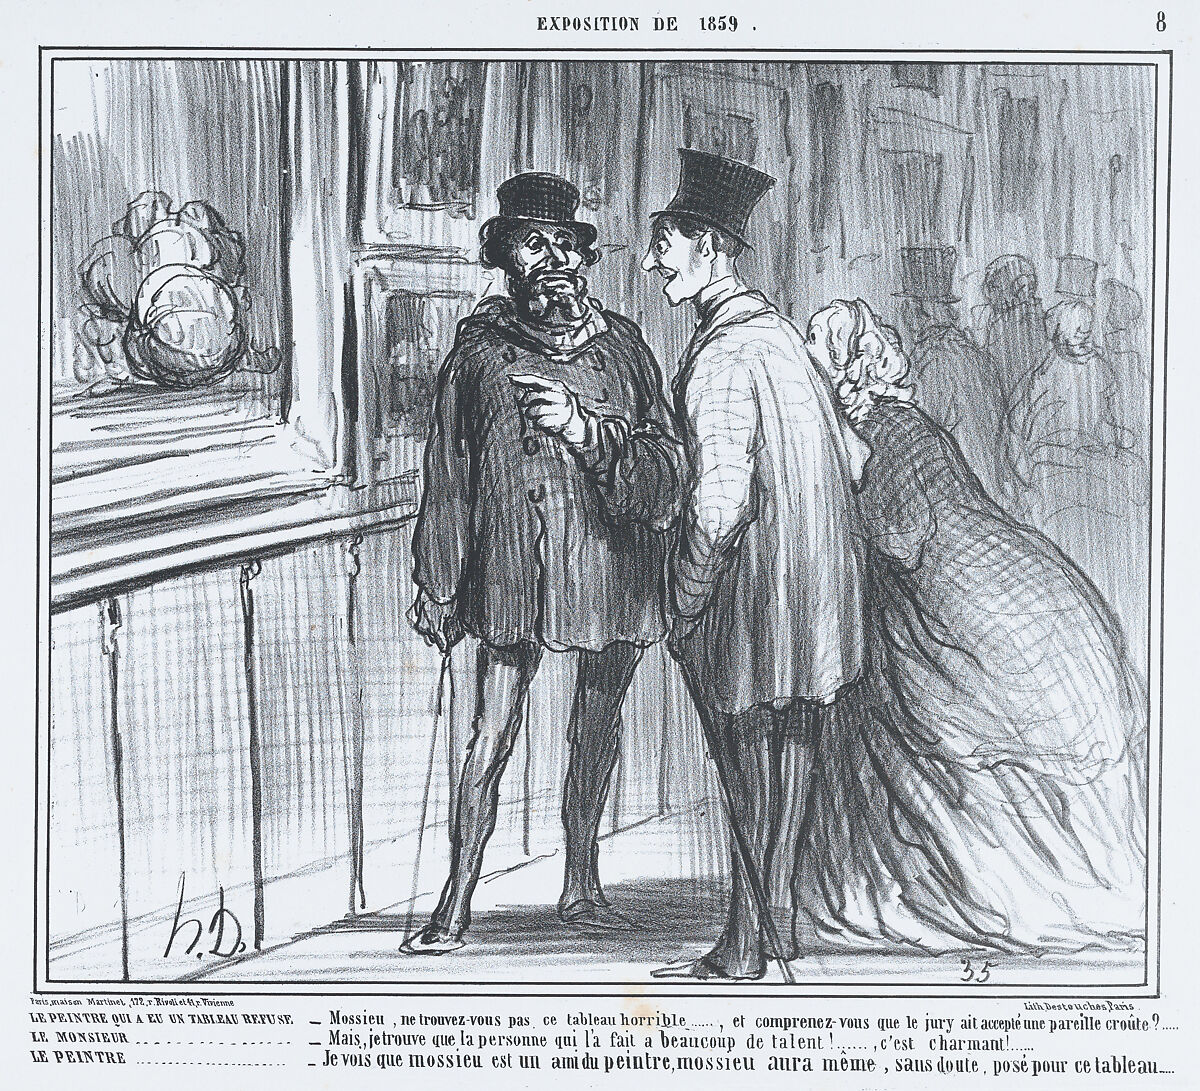 La peintre qui a eu un tableau refuse, from L'Exposition de 1859, published in Le Charivari, April 27, 1859, Honoré Daumier (French, Marseilles 1808–1879 Valmondois), Lithograph; second state (Delteil) 